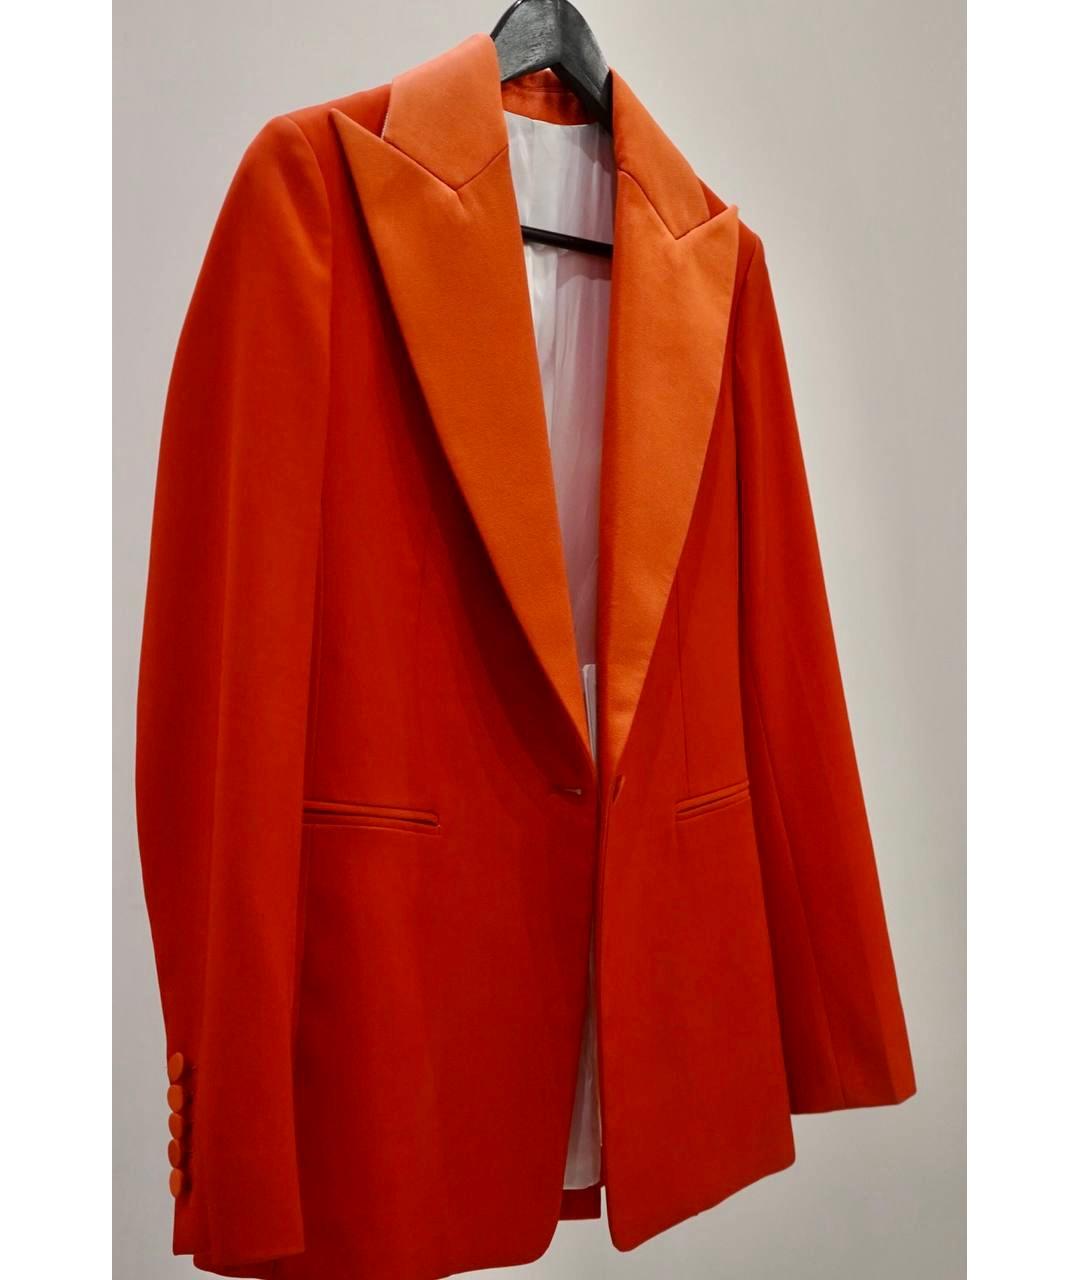 JOSEPH Красный шерстяной жакет/пиджак, фото 2